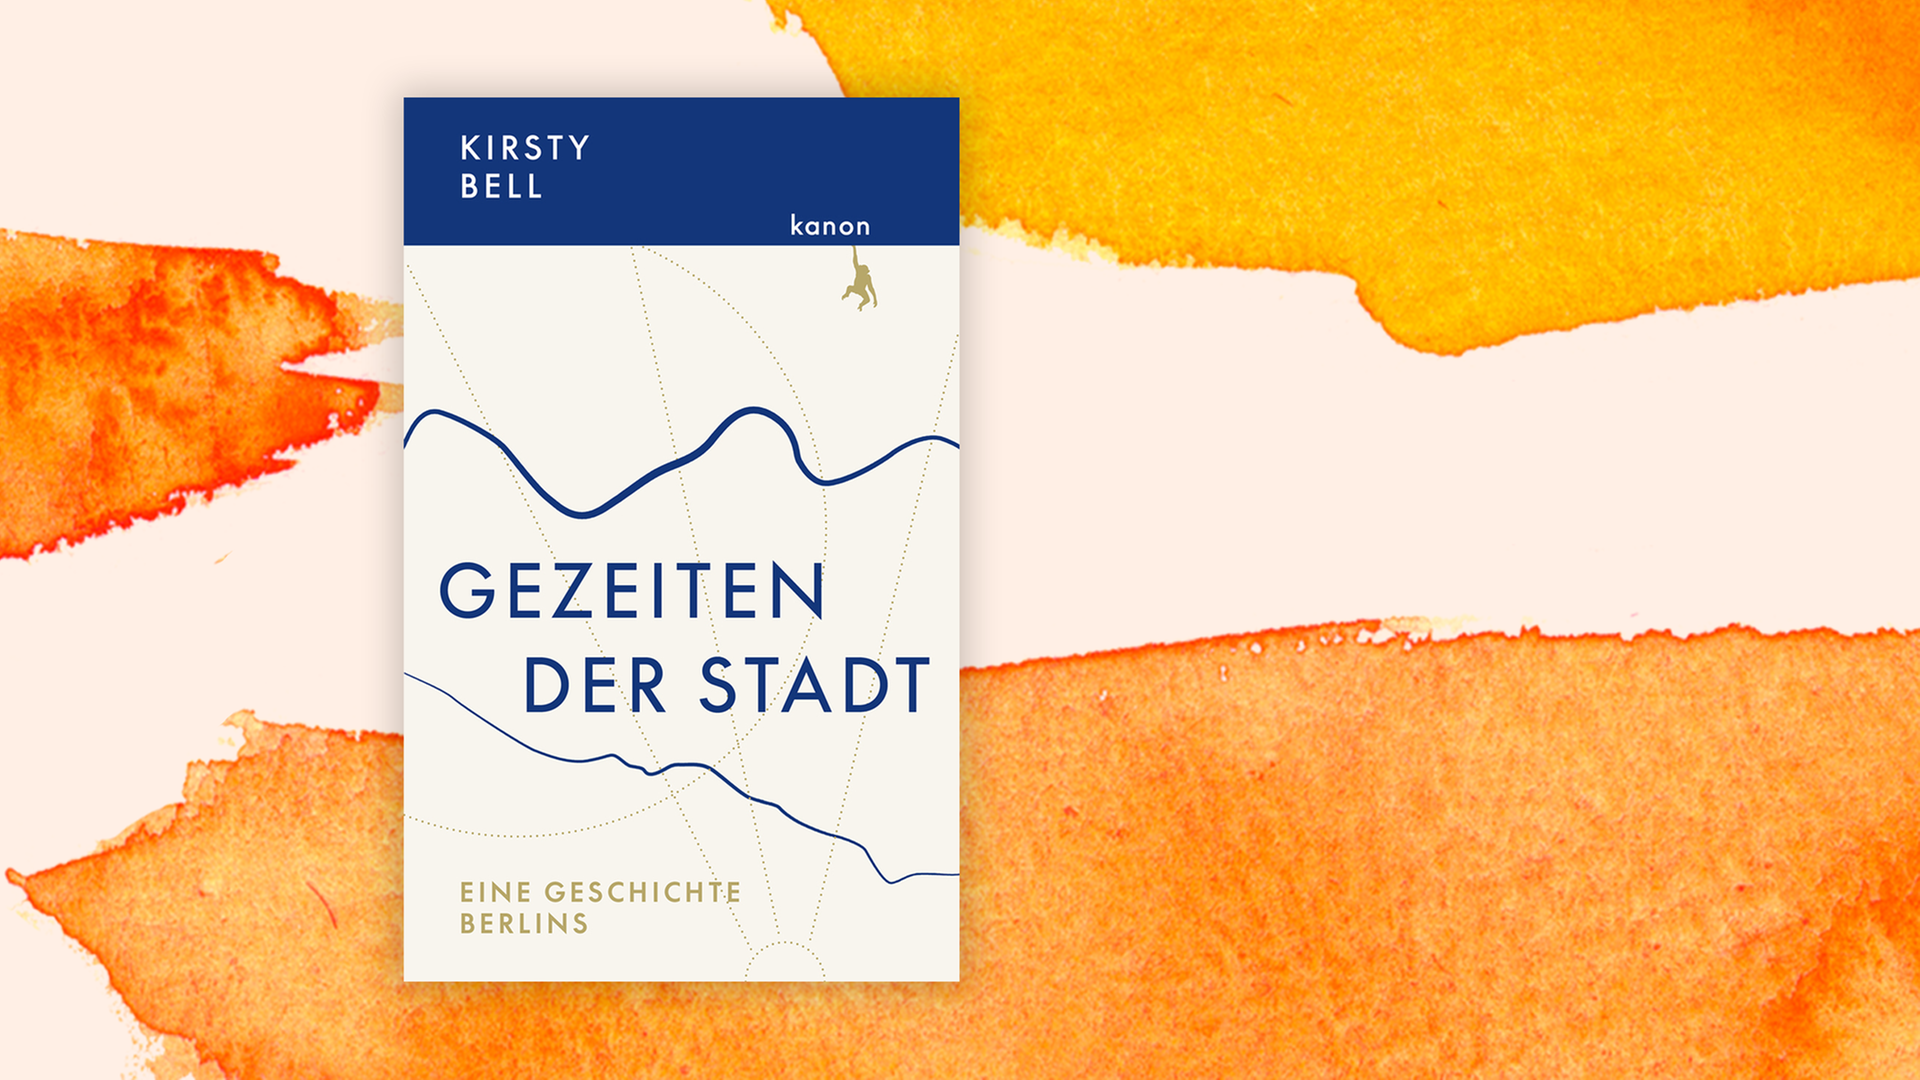 Zu sehen ist das Cover des Buches "Gezeiten der Stadt. Eine Geschichte Berlins" von Kirsty Bell.